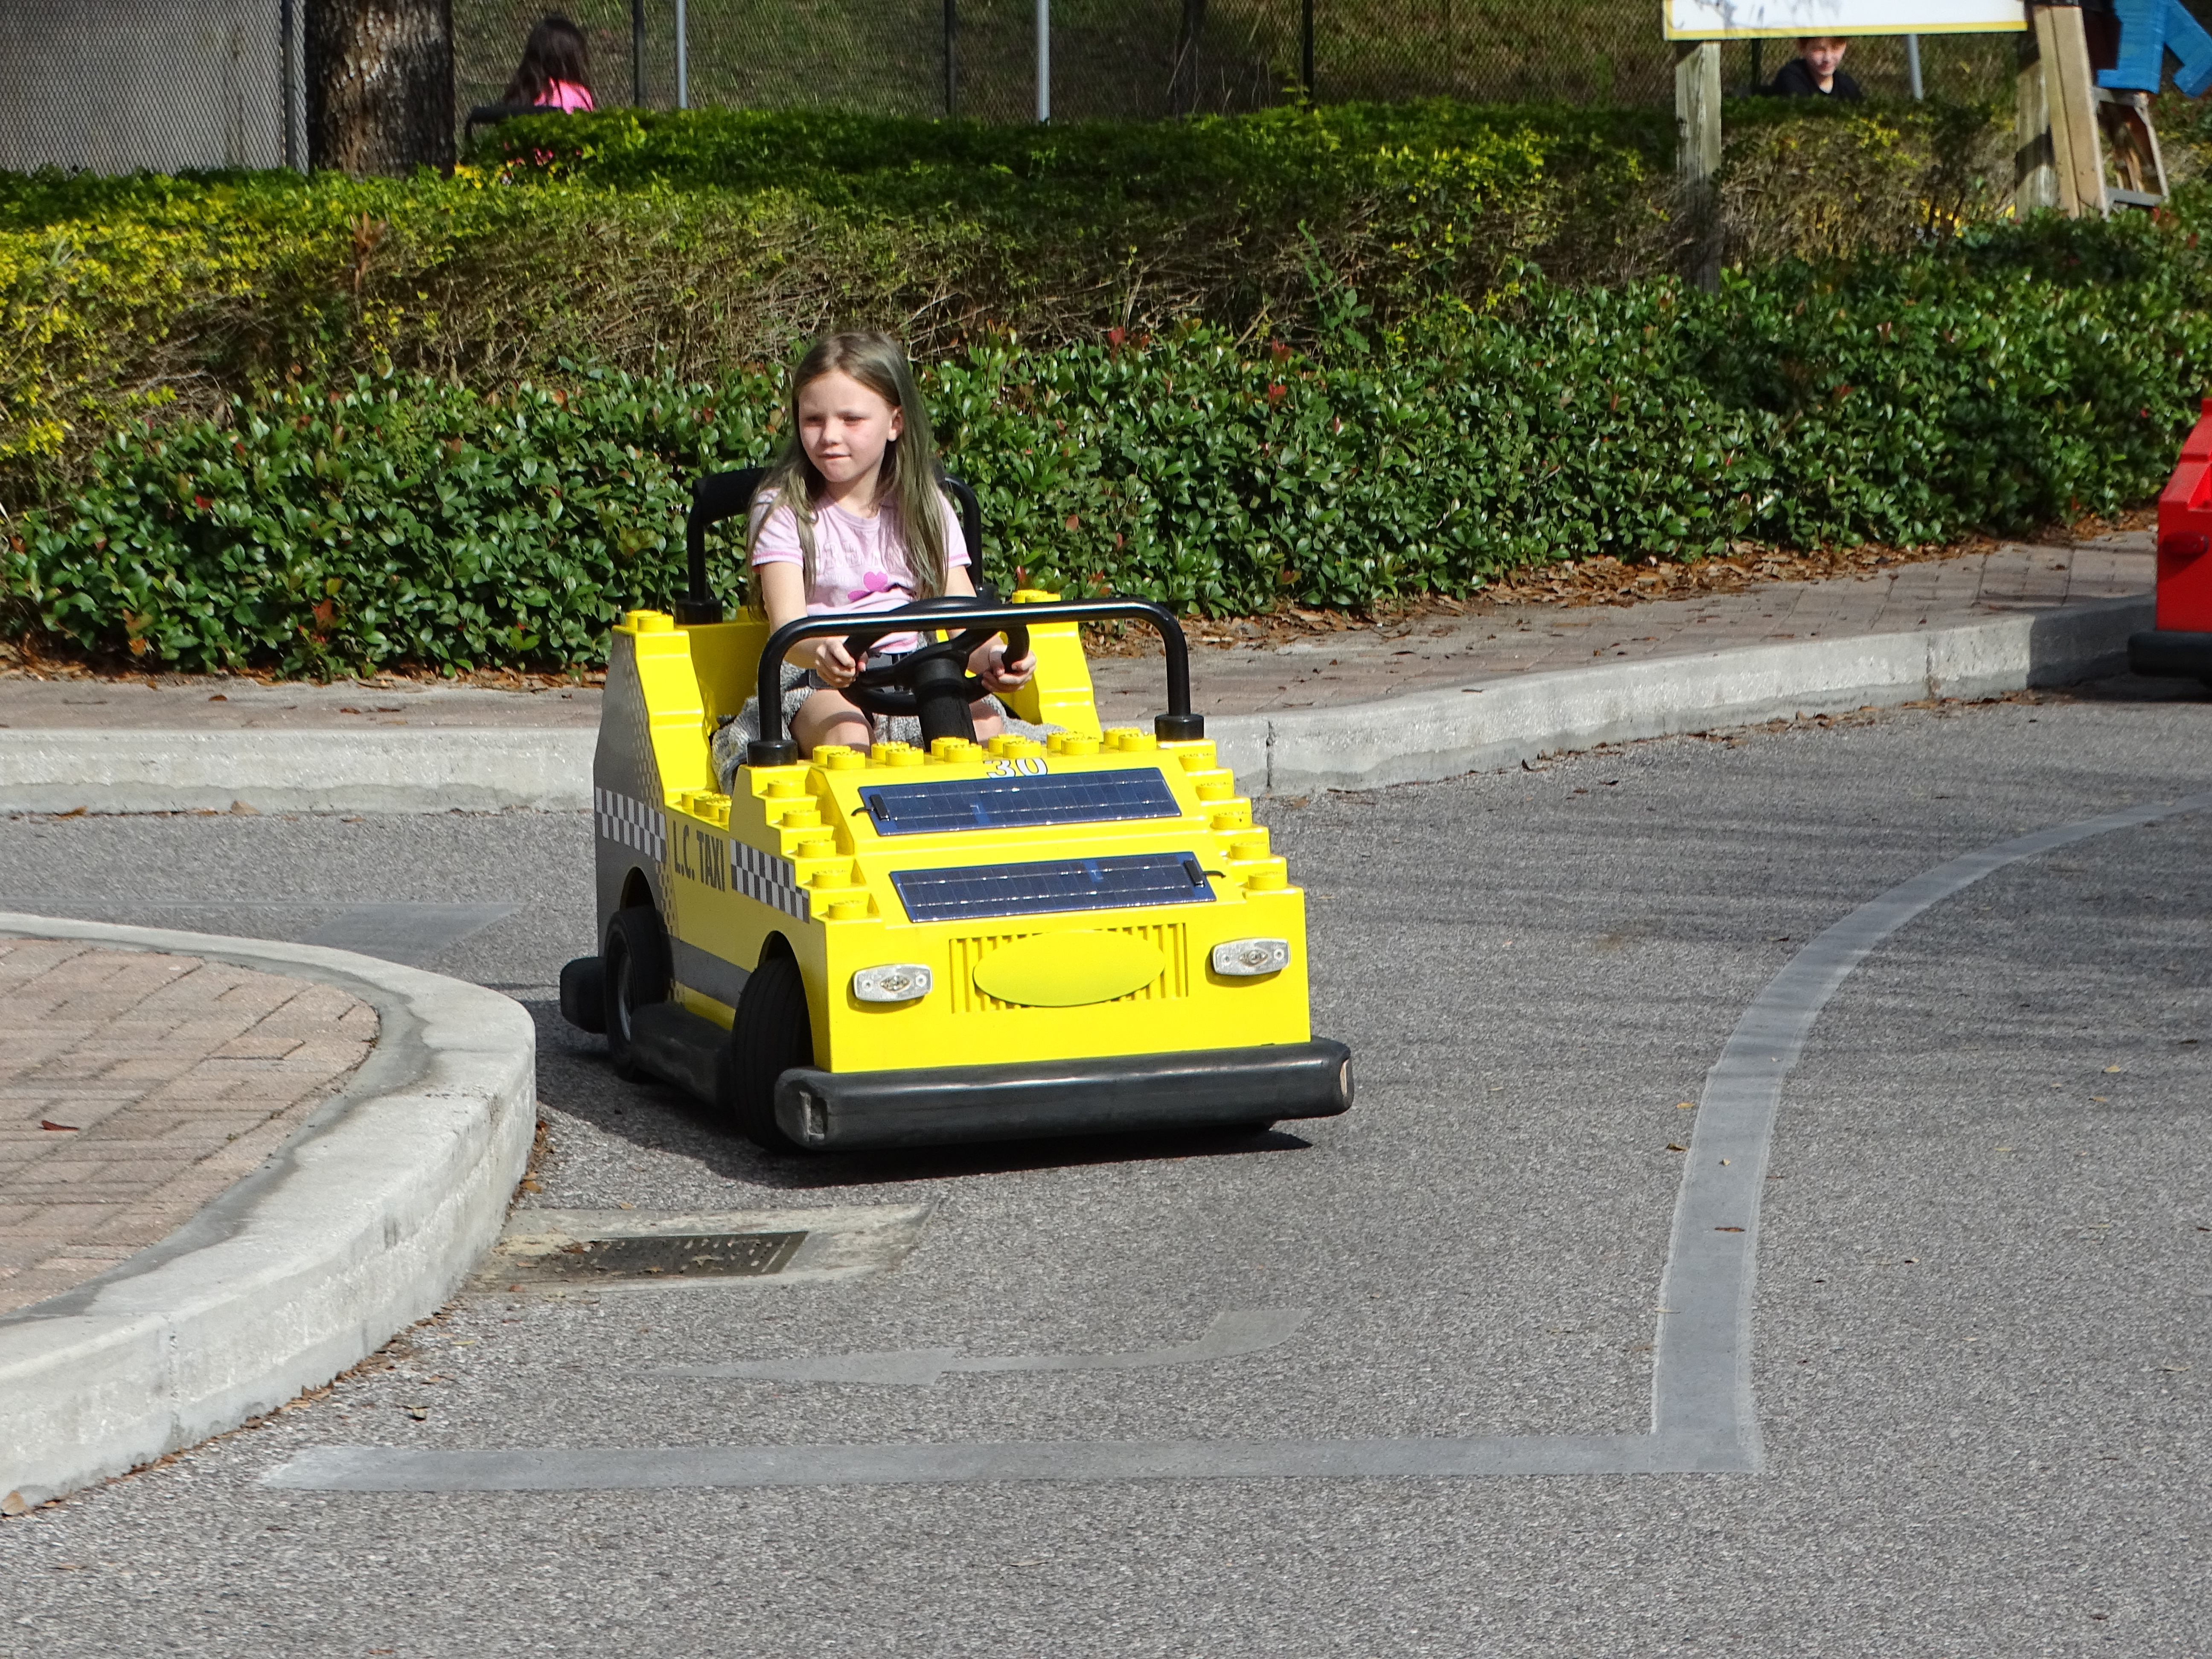 Driving school at Legoland Florida